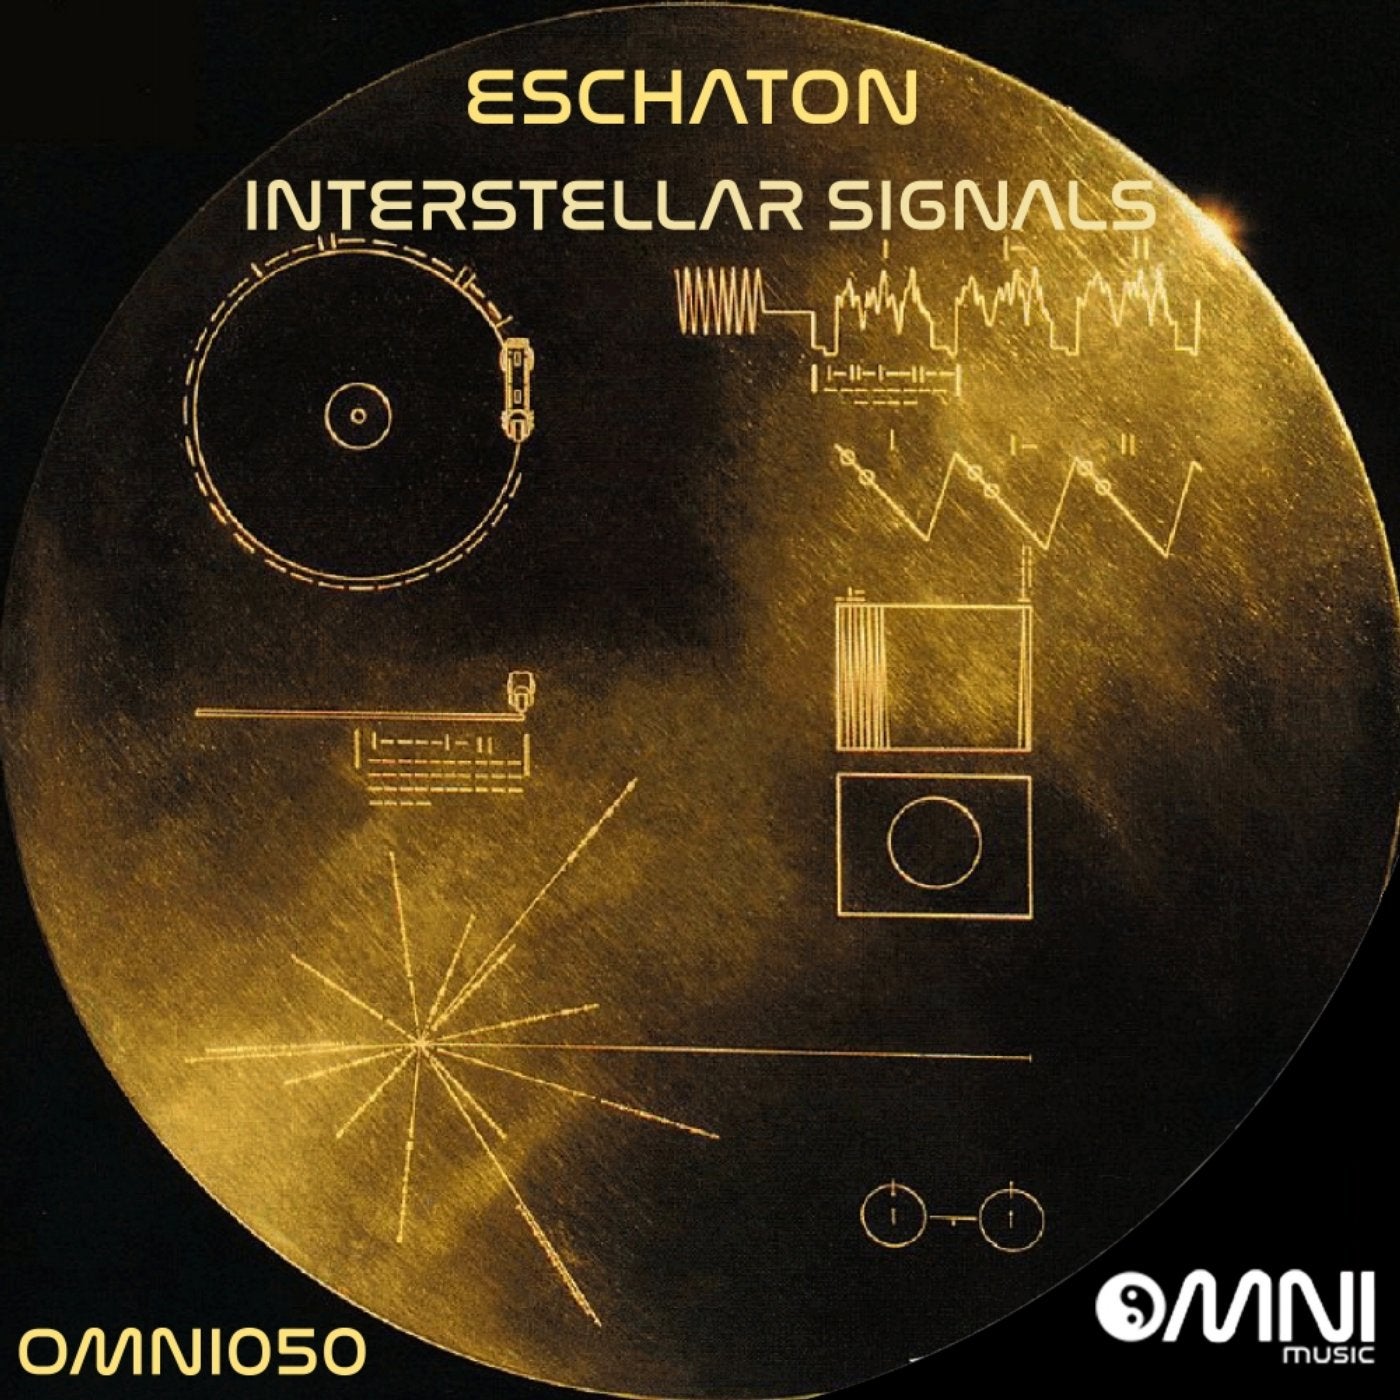 Interstellar Signals